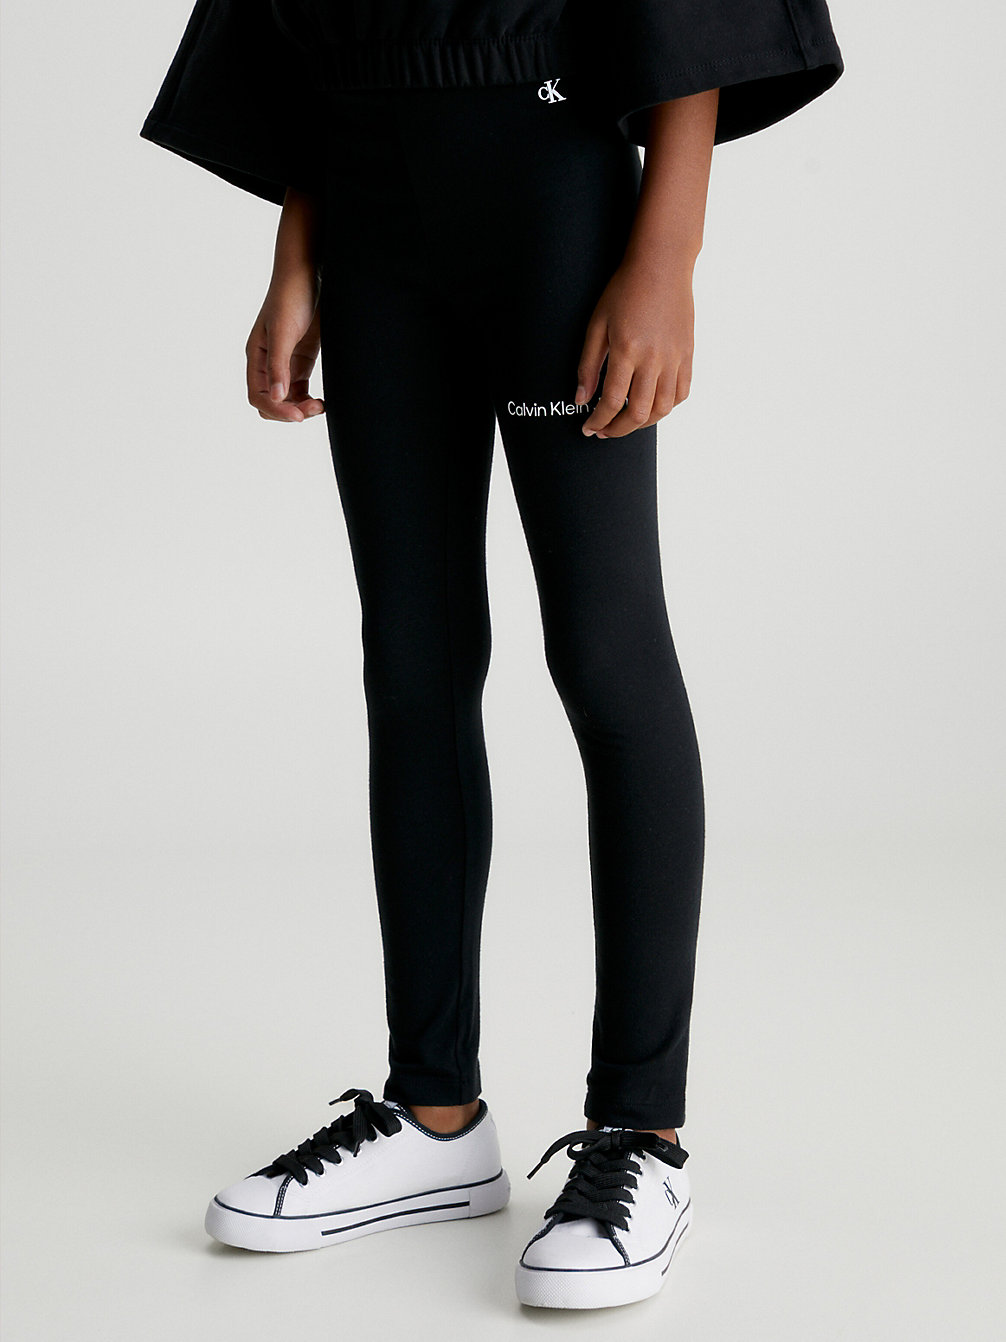 CK BLACK Slim Legging undefined girls Calvin Klein